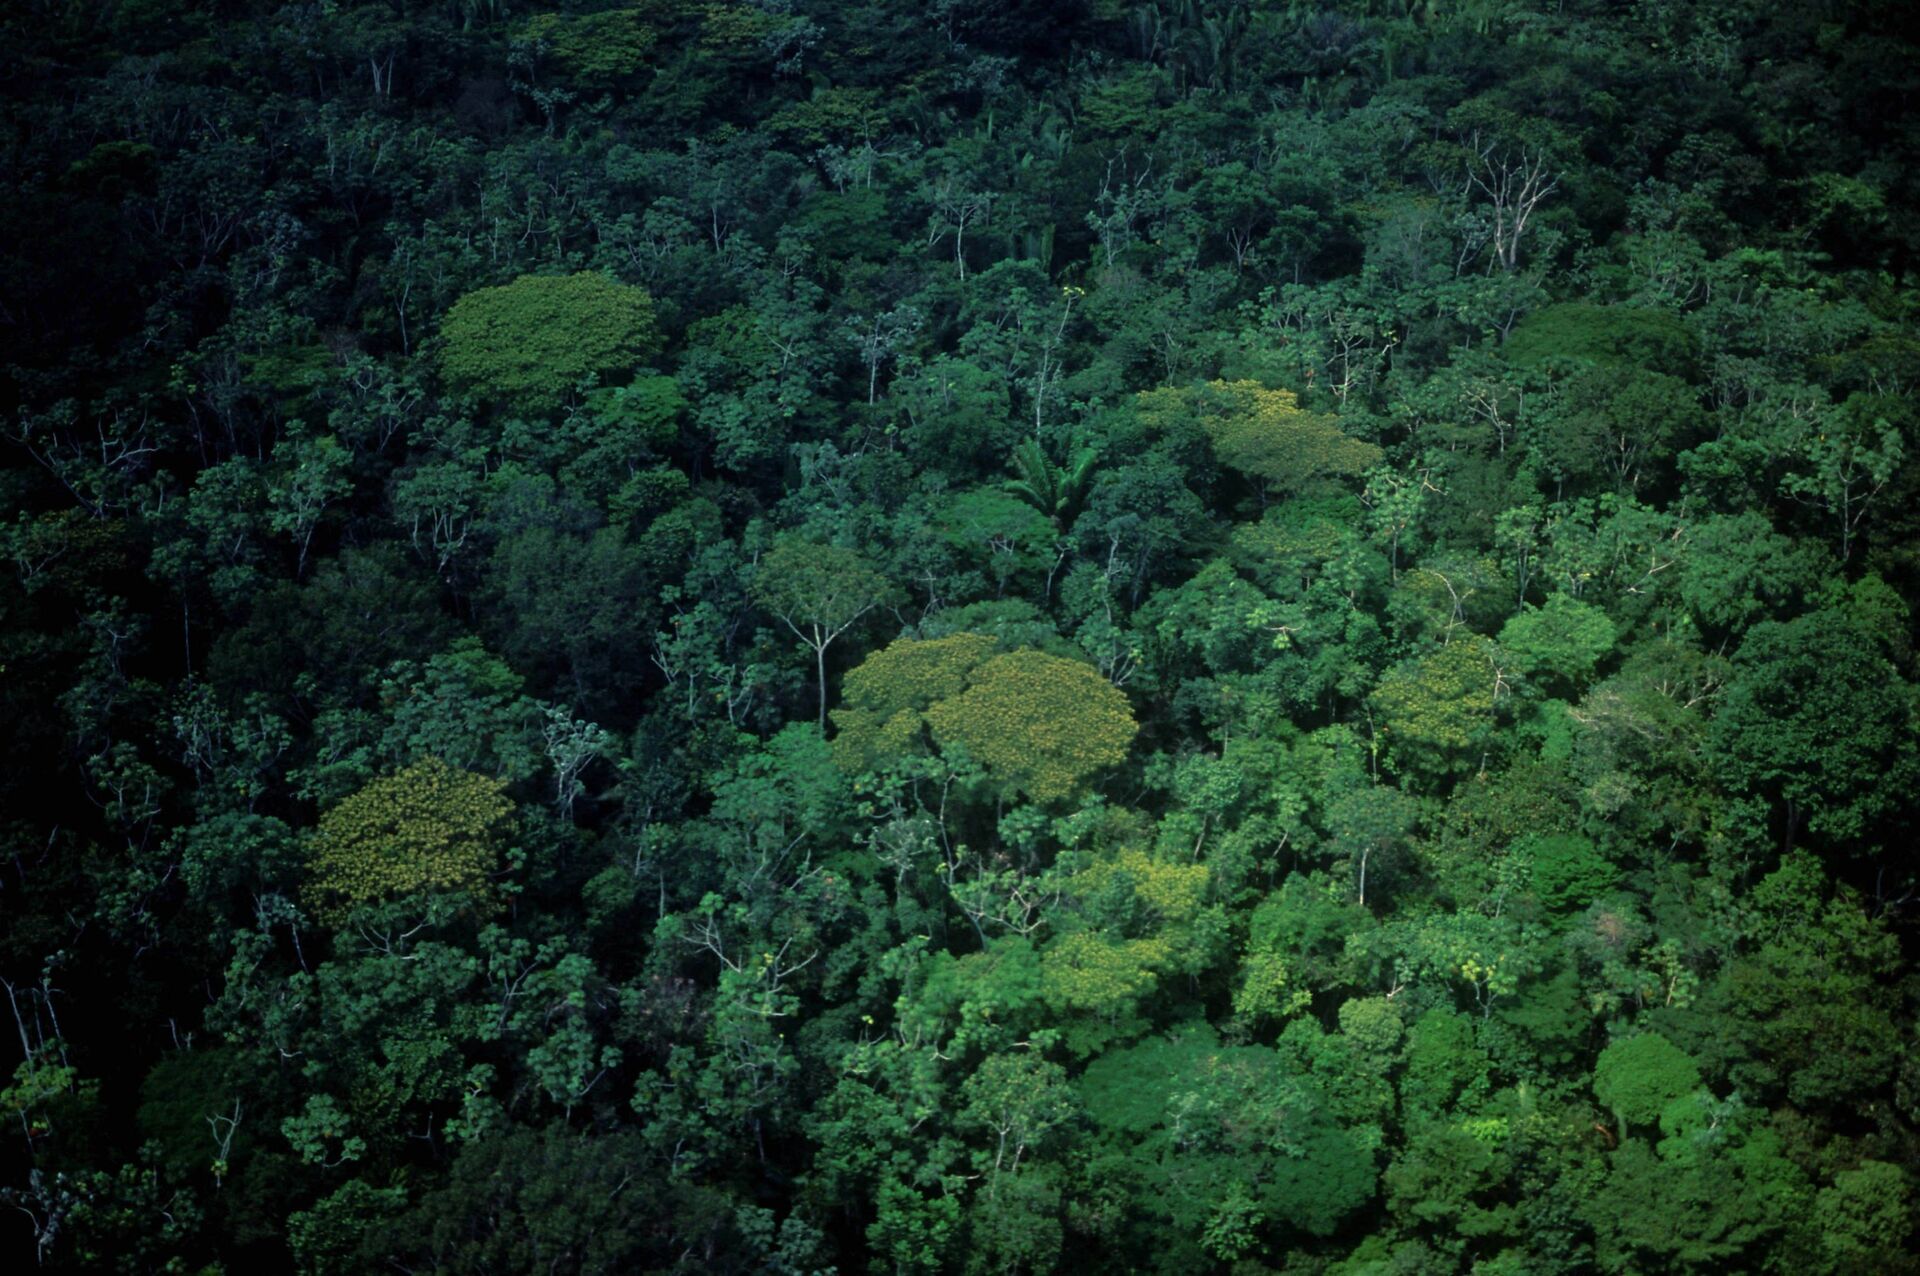 Estudo sugere que queda de asteroide que extinguiu dinossauros criou a floresta Amazônica de hoje - Sputnik Brasil, 1920, 05.04.2021